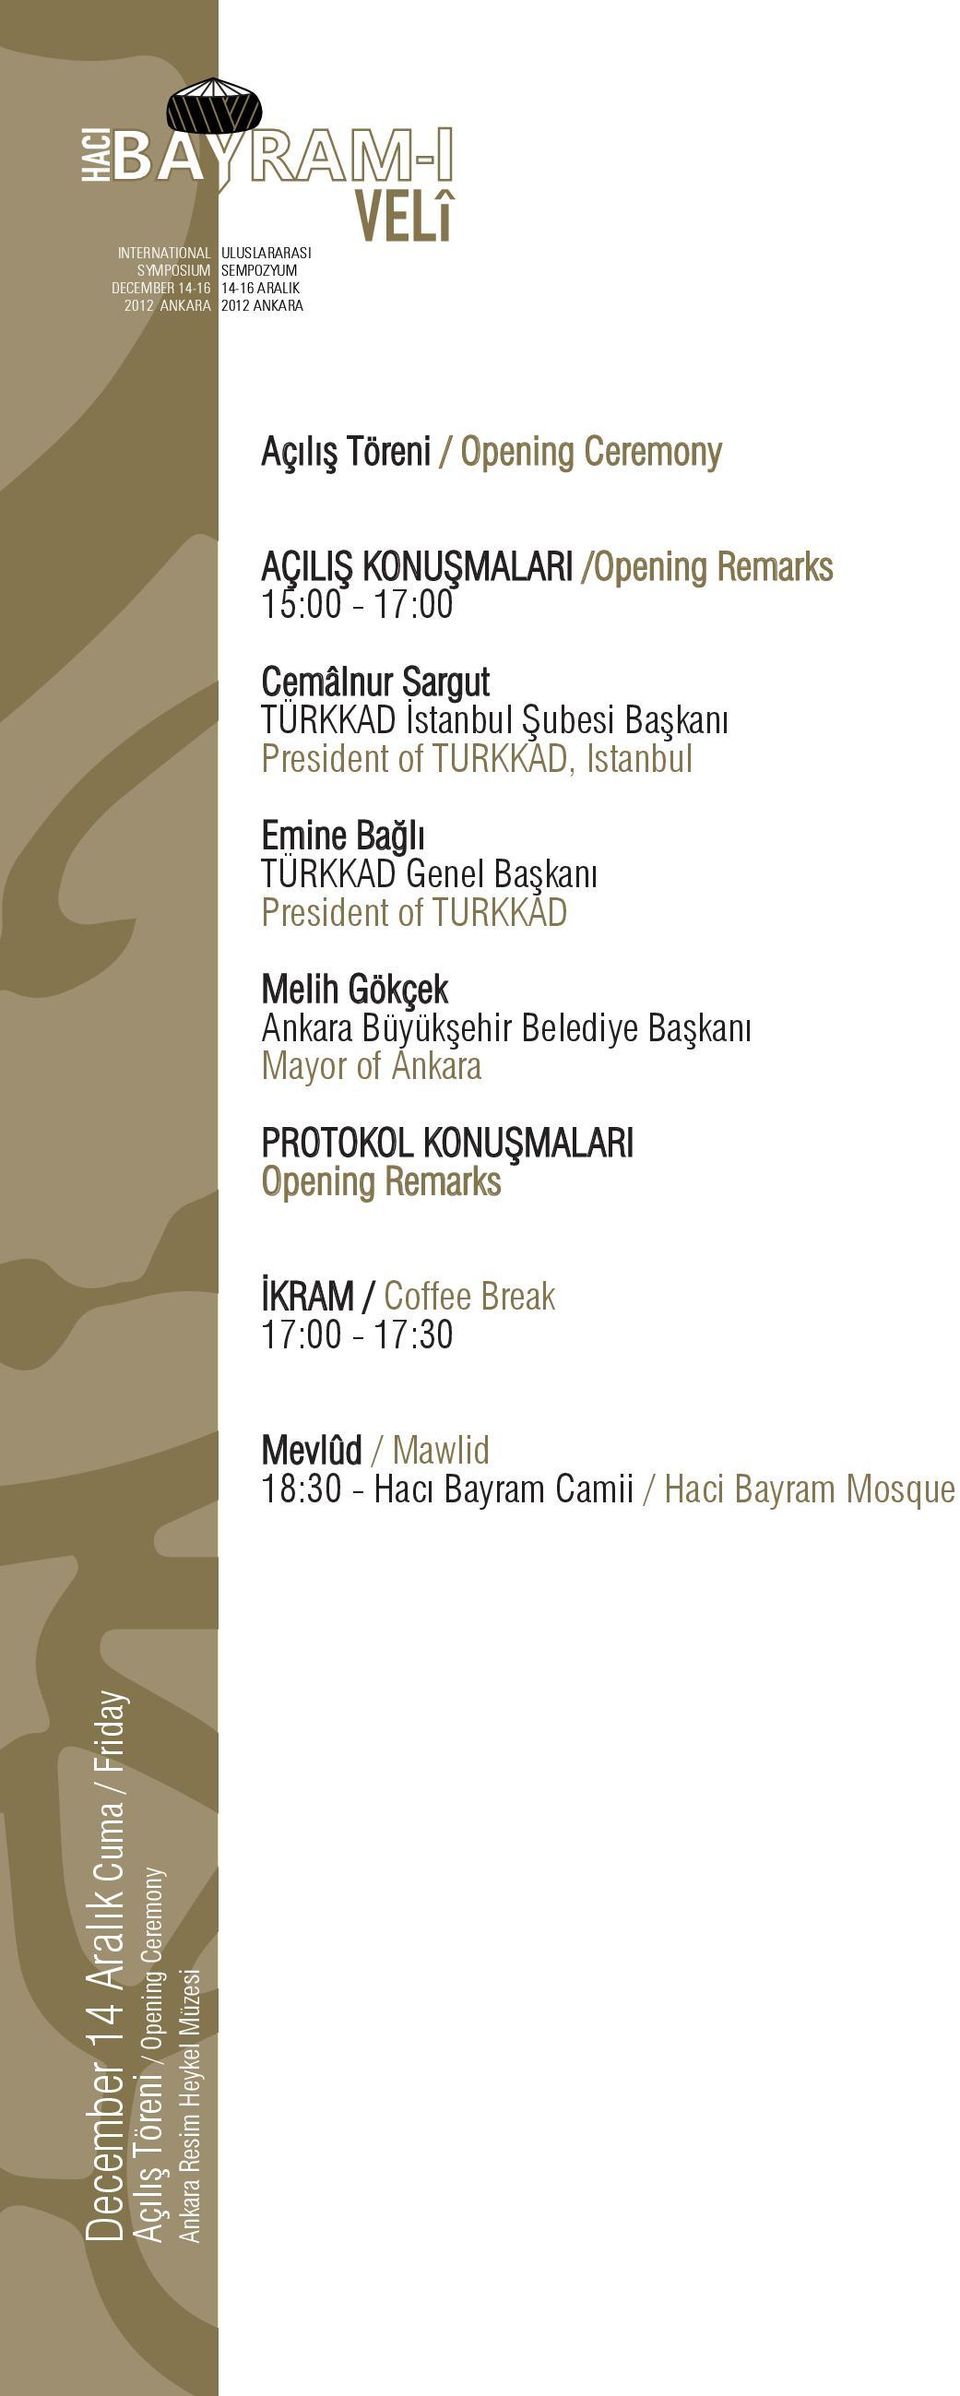 Belediye Başkanı Mayor of Ankara PROTOKOL KONUŞMALARI Opening Remarks İKRAM / Coffee Break 17:00-17:30 Mevlûd / Mawlid 18:30